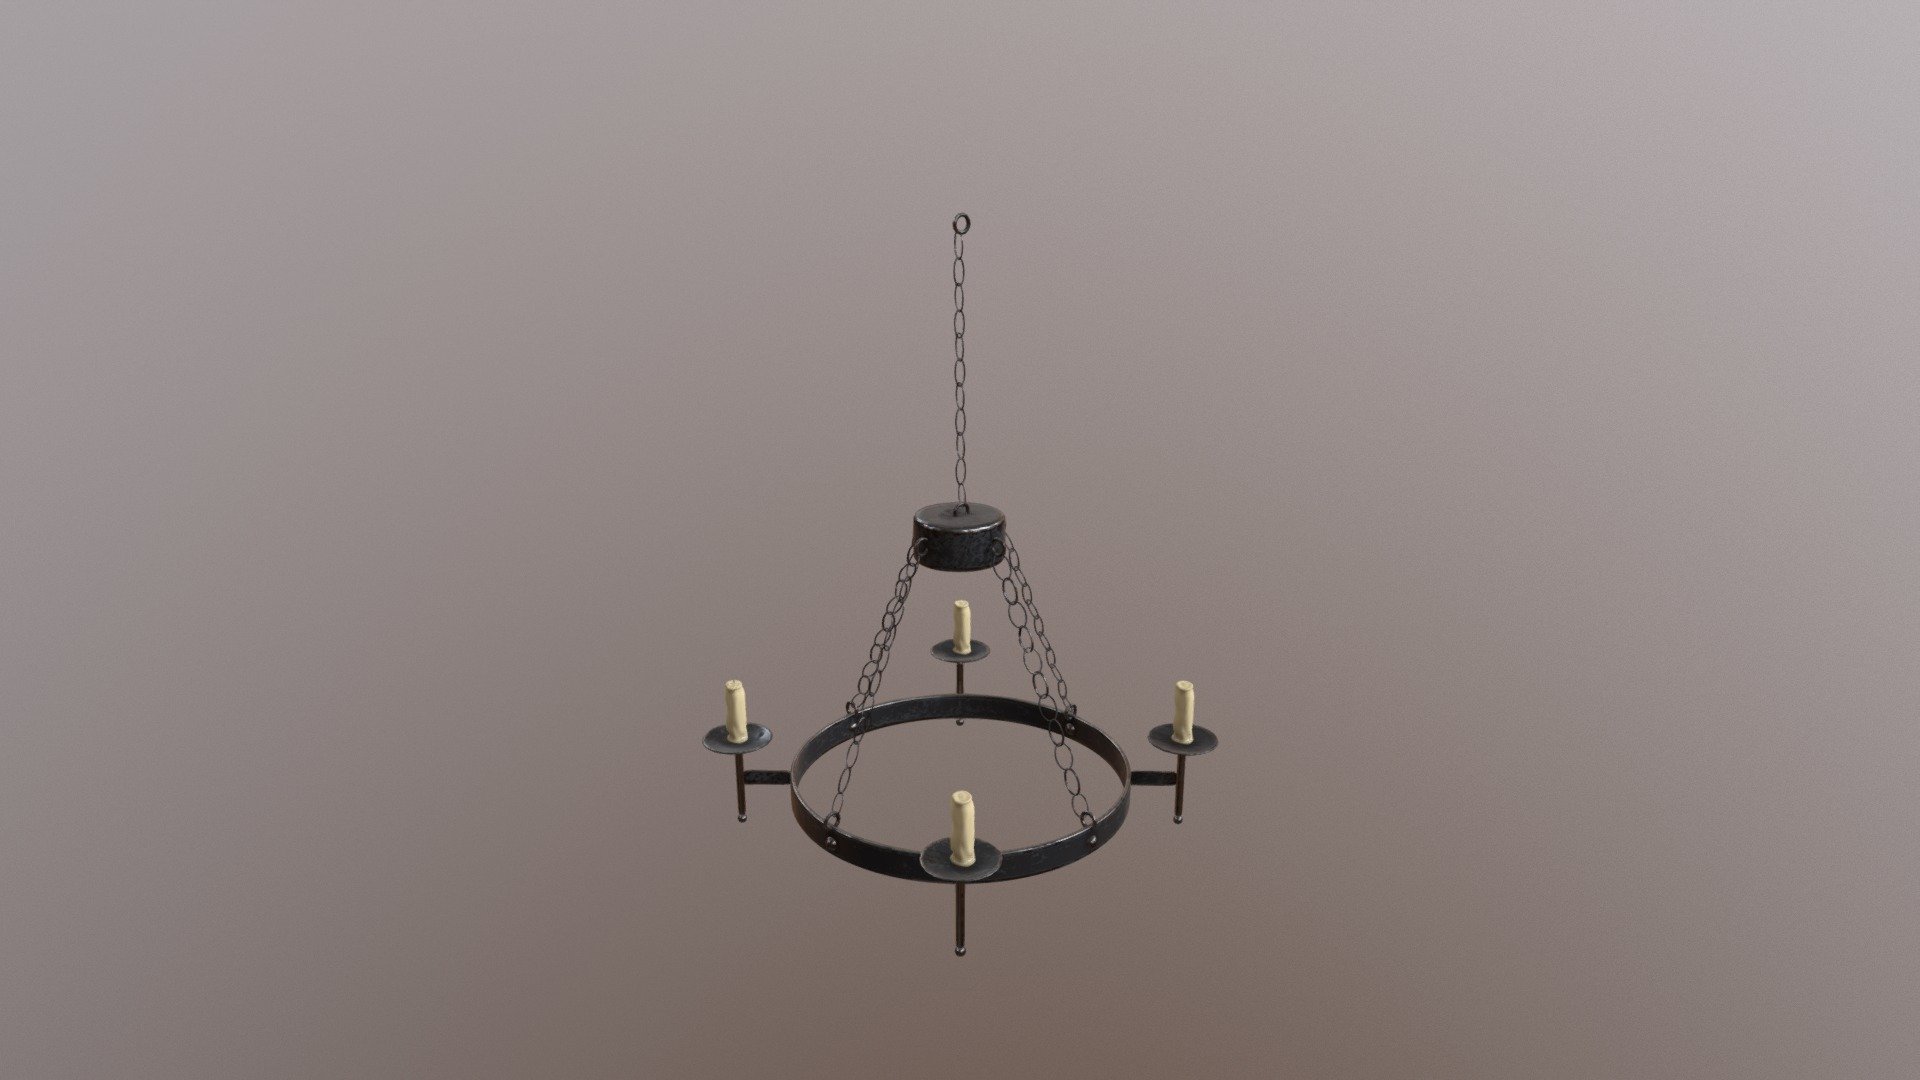 Asset 1: Medieval Chandelier Lamp